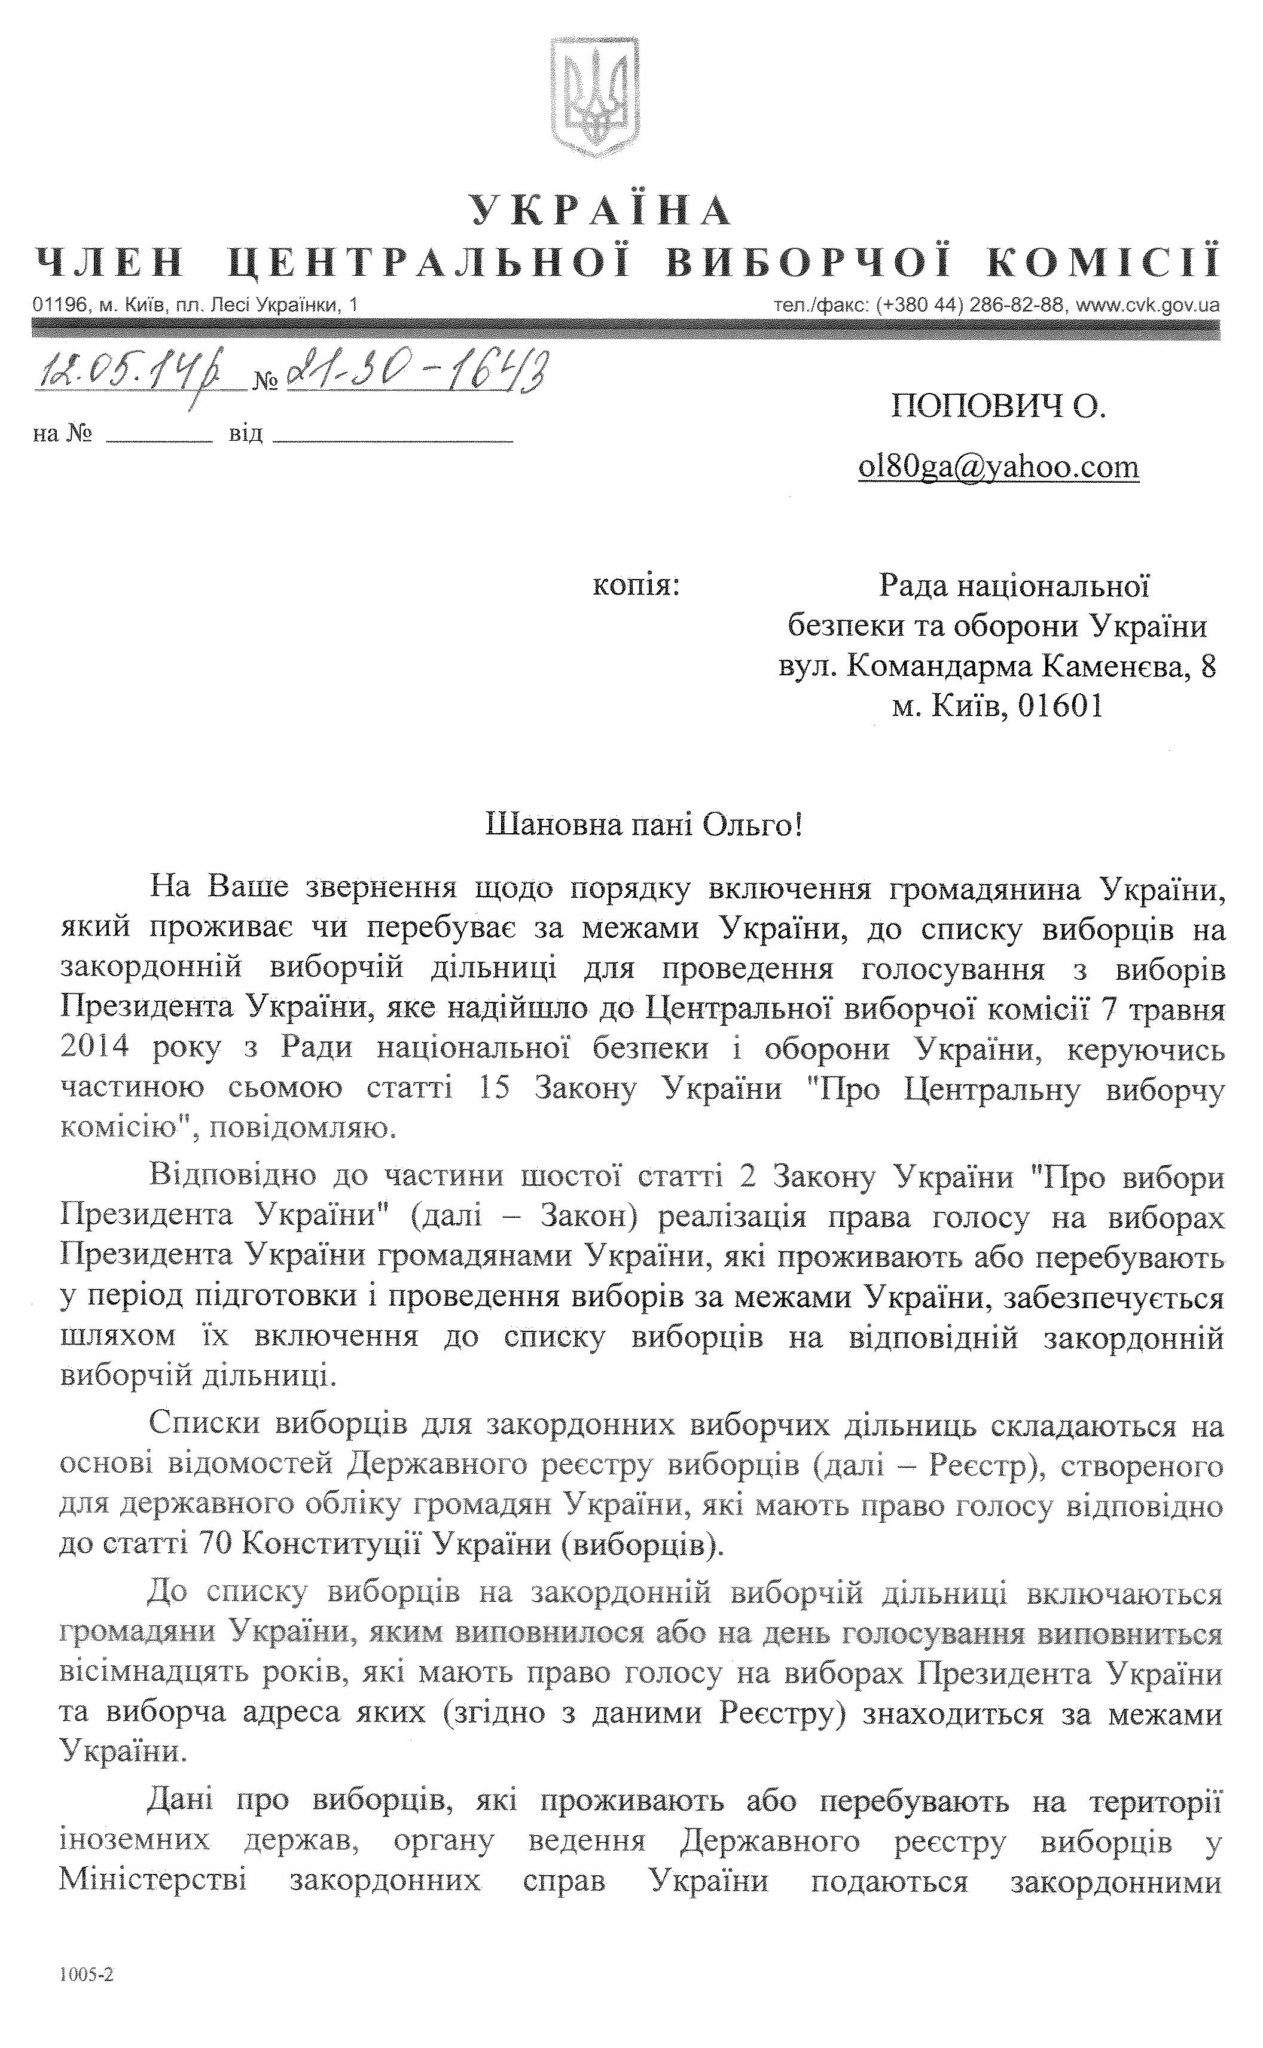 Про порядок включення громадянина України, який проживає чи перебуває за межами України, до списку виборців